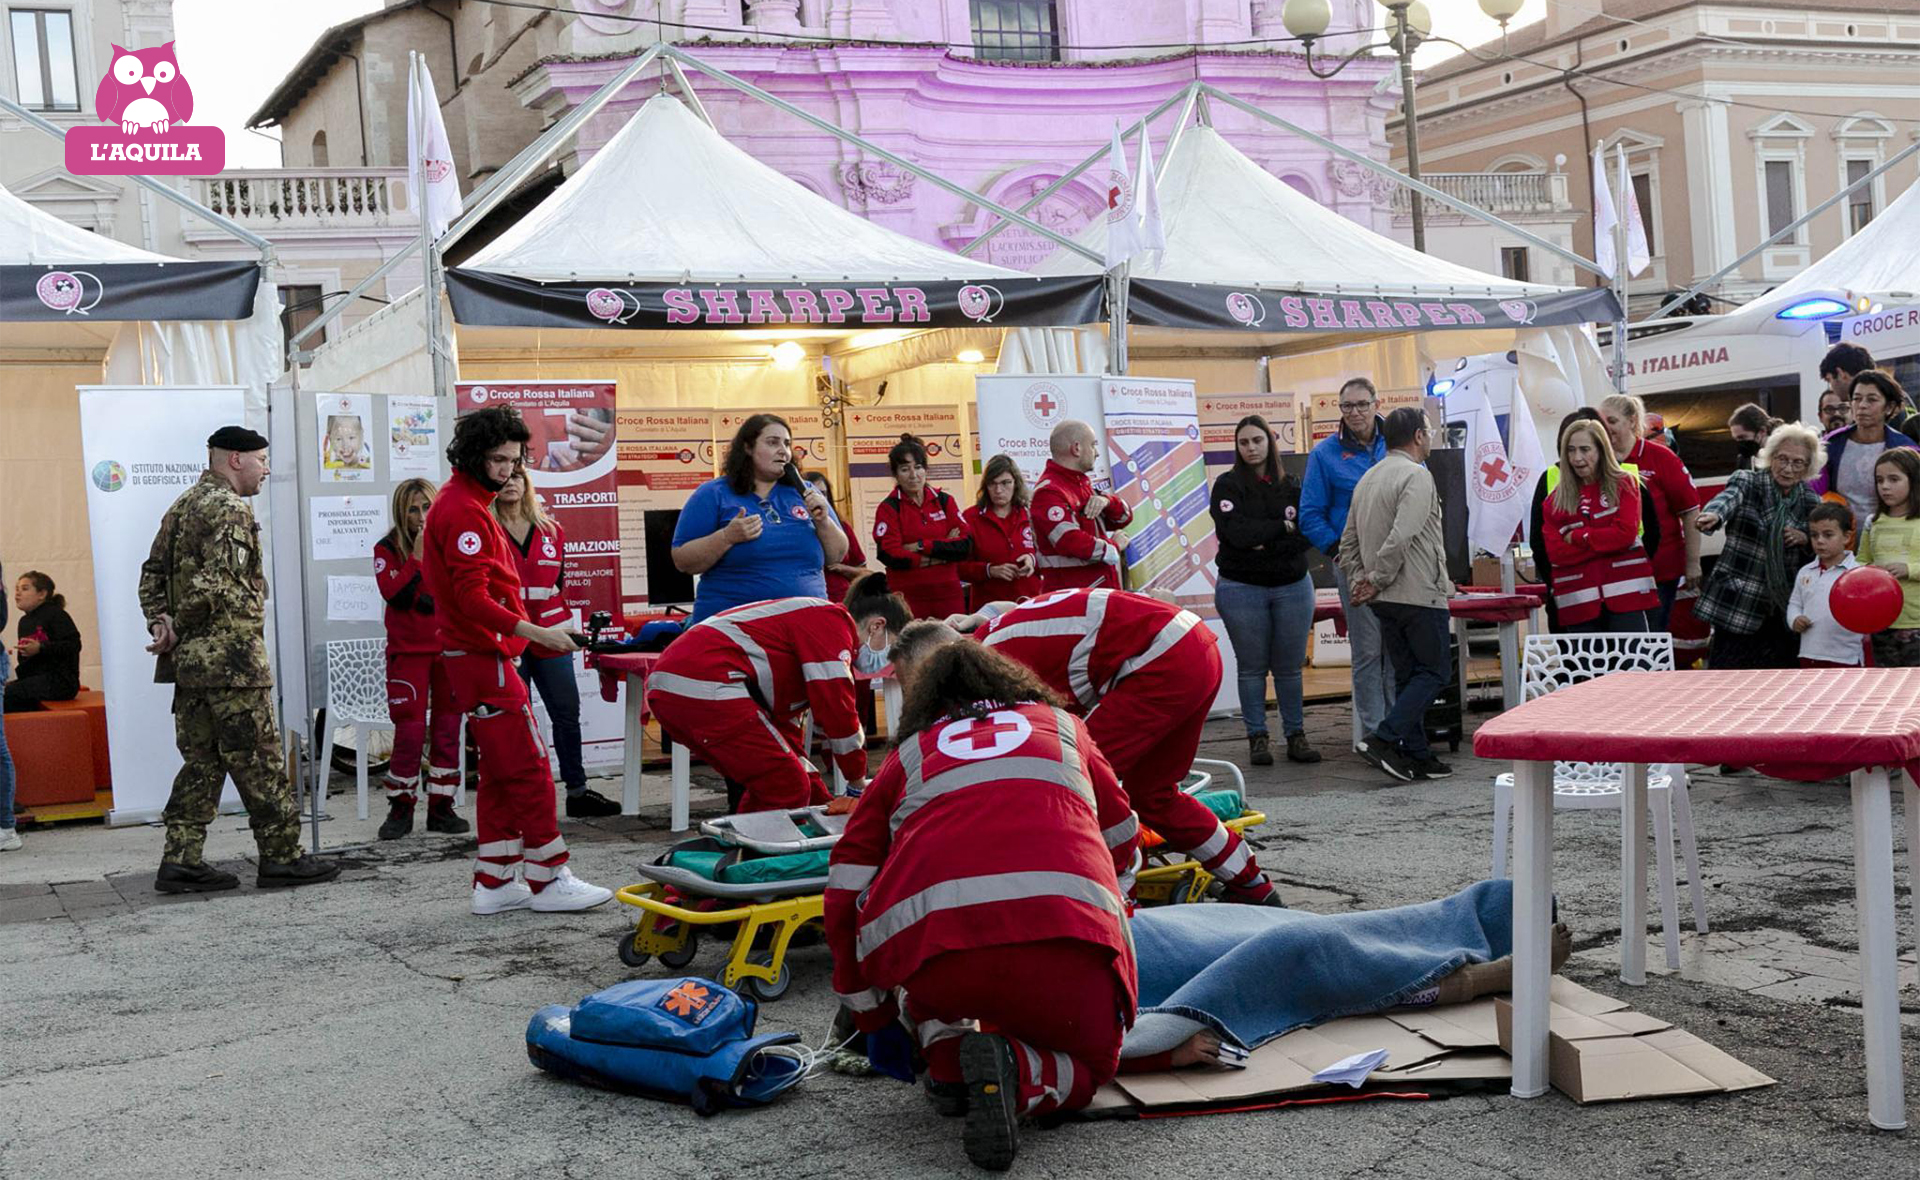 Croce Rossa Italiana - Comitato di L'Aquila